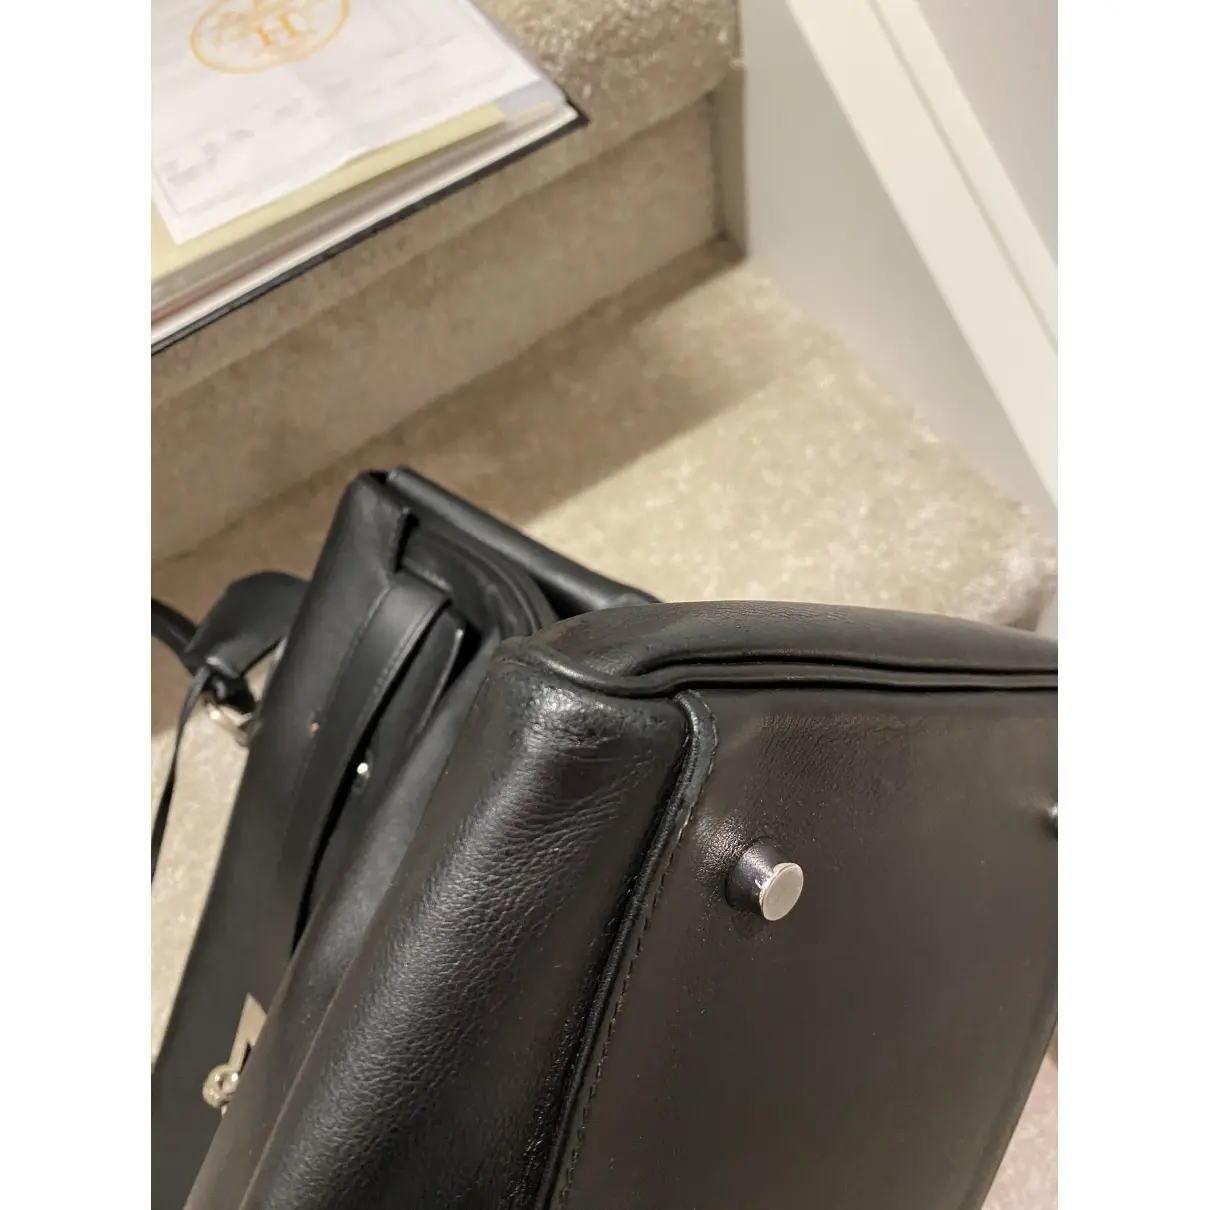 Buy Hermès Kelly Voyage leather travel bag online